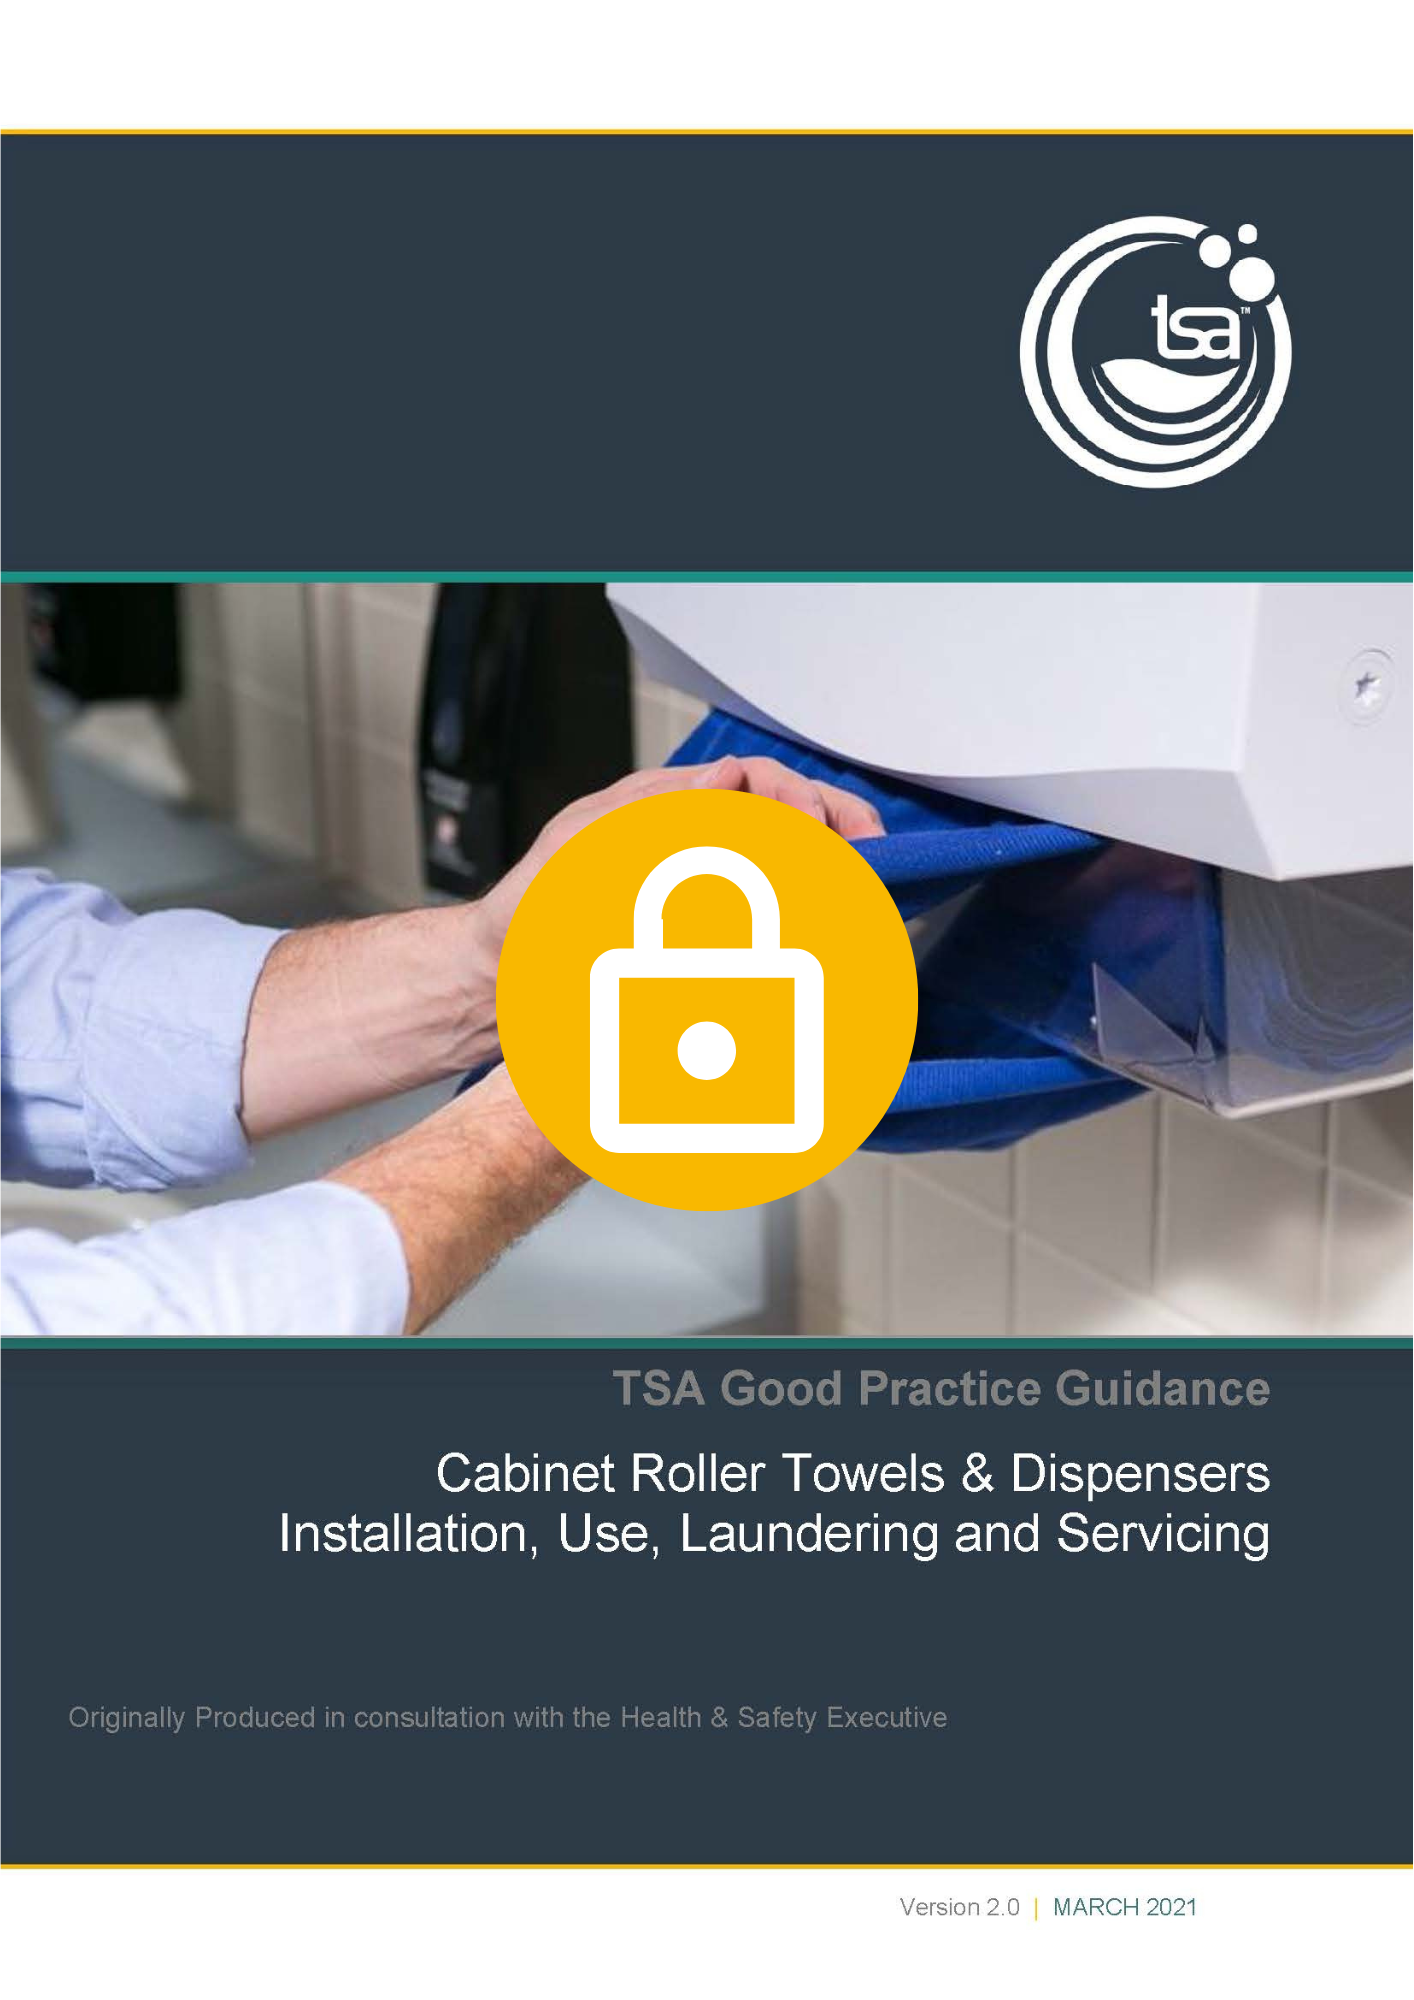 Cabinet Roller Towel Good Practice Guidance